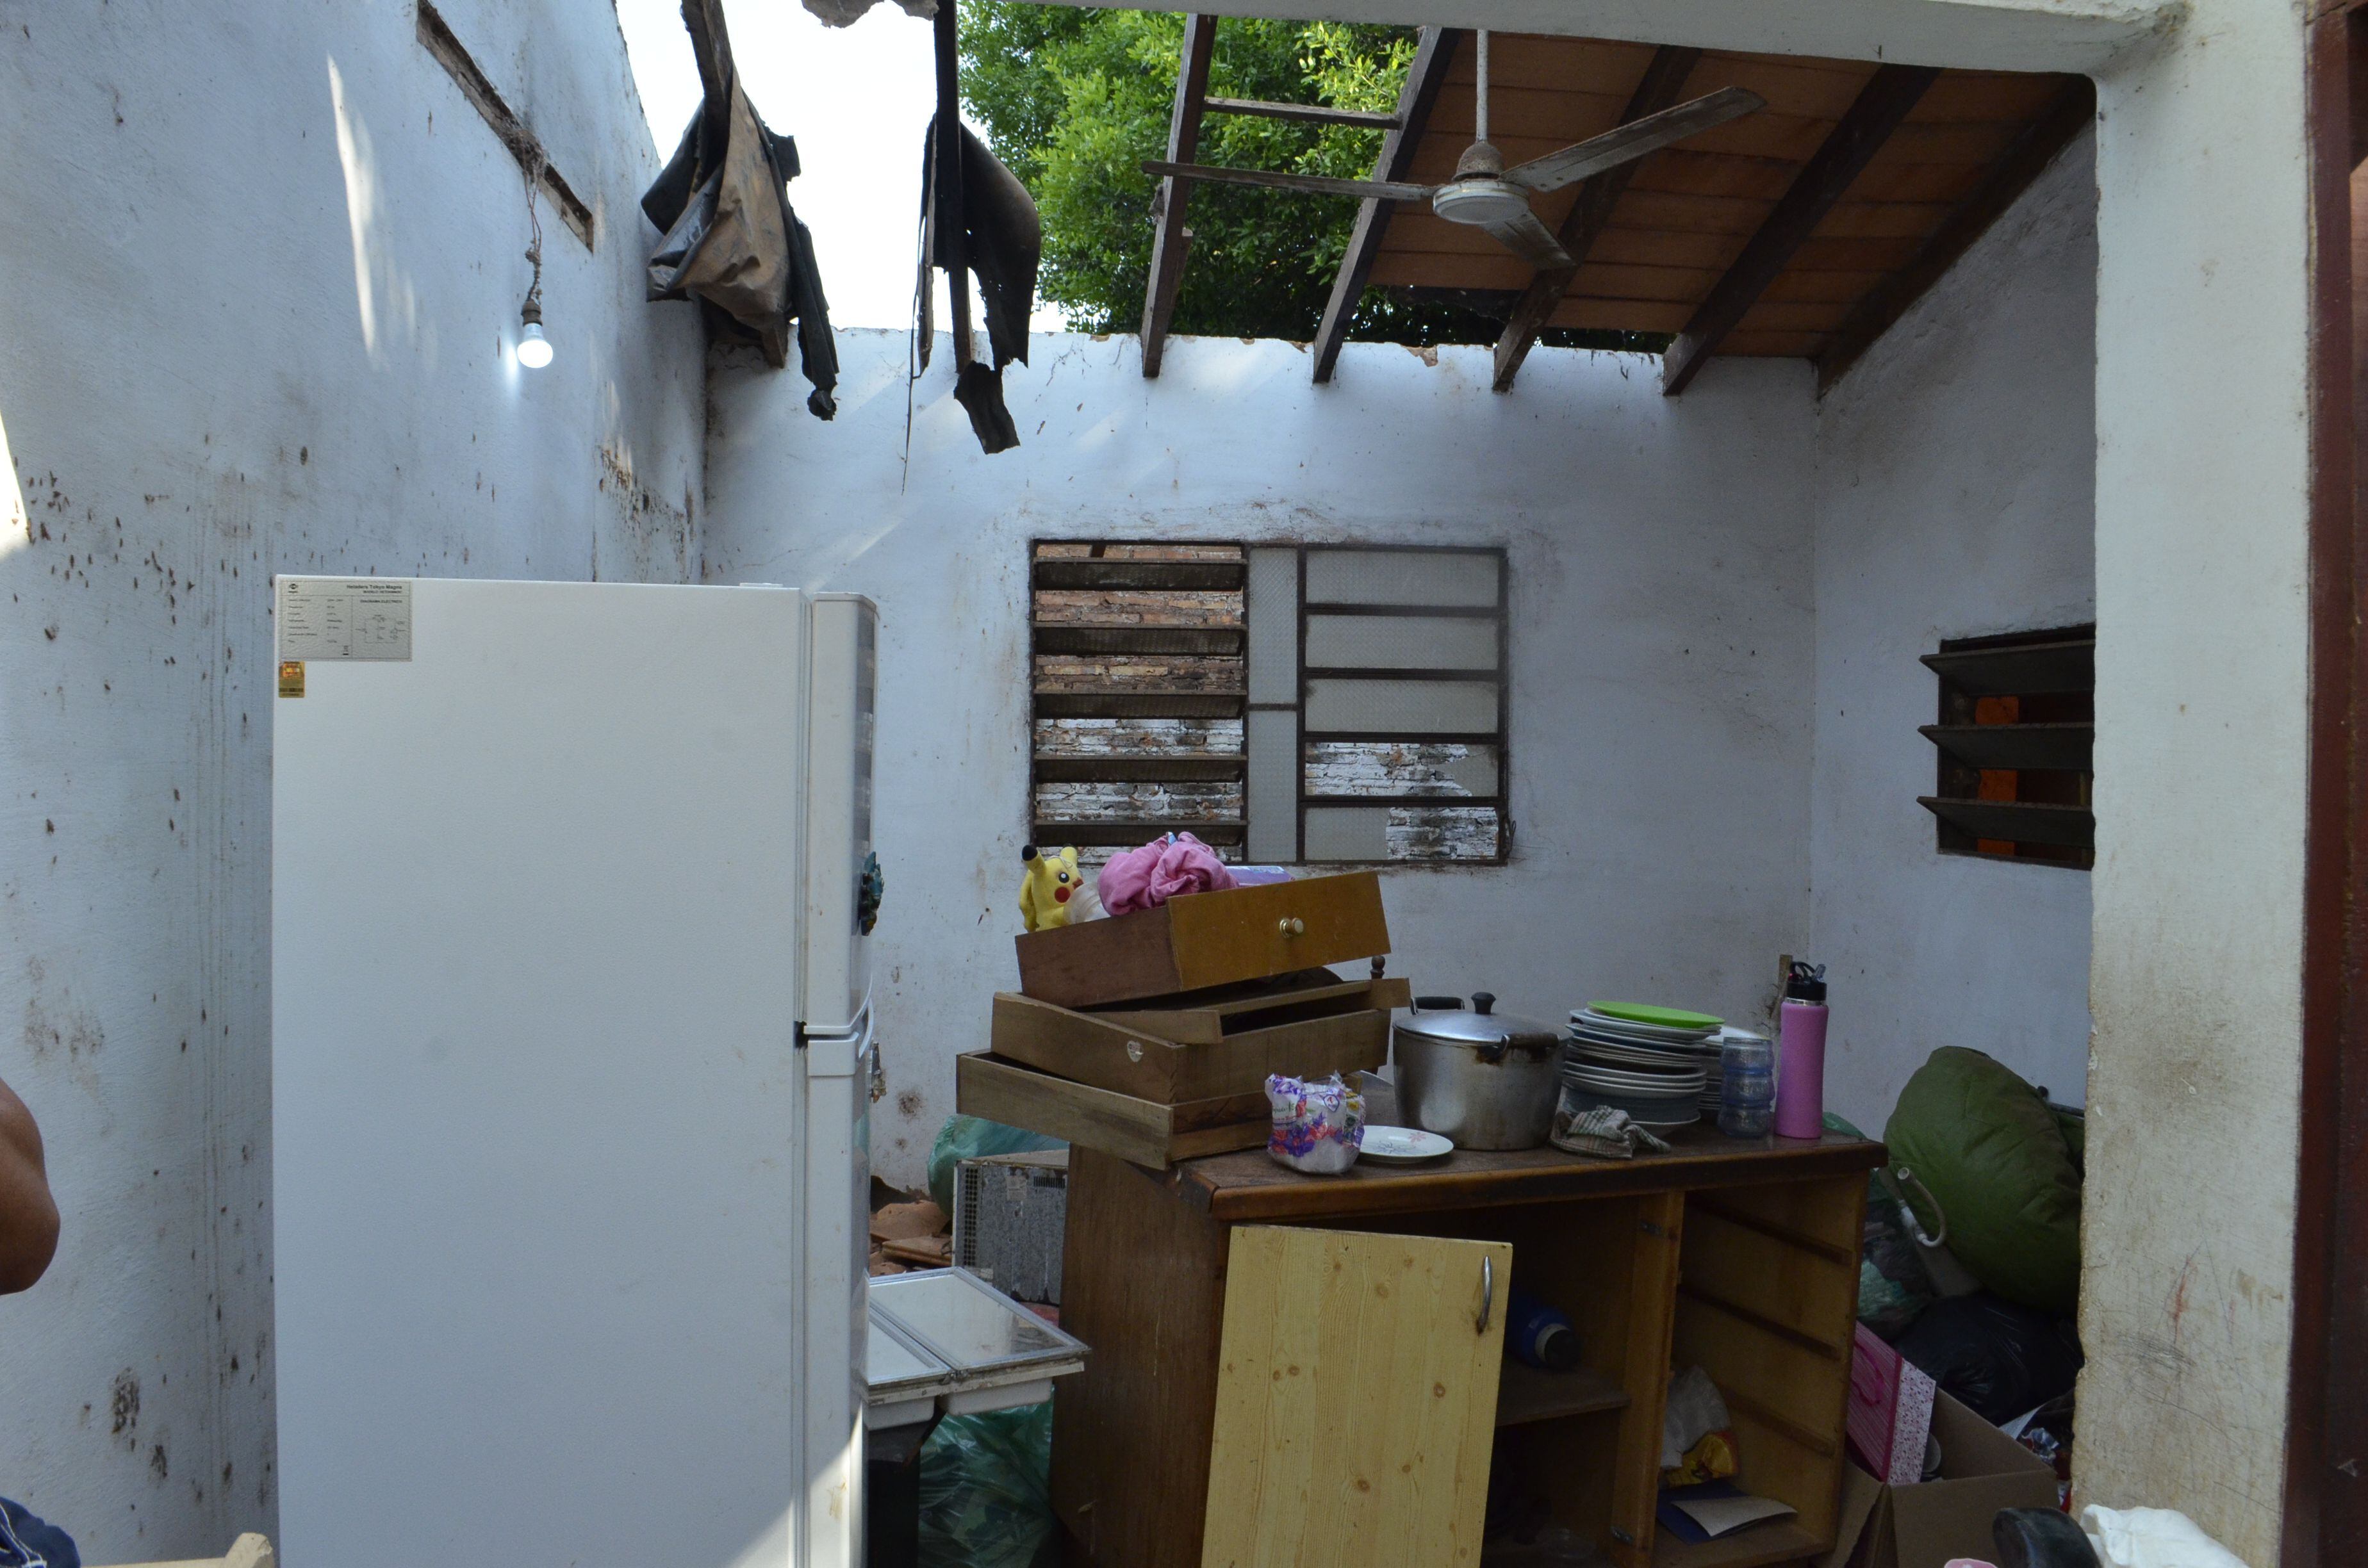 En estas condiciones quedó una de las salas de la casa de la familia Villamayor Gómez de Villa Elisa tras el desalojo, que según la denuncia se hizo en forma irregular.